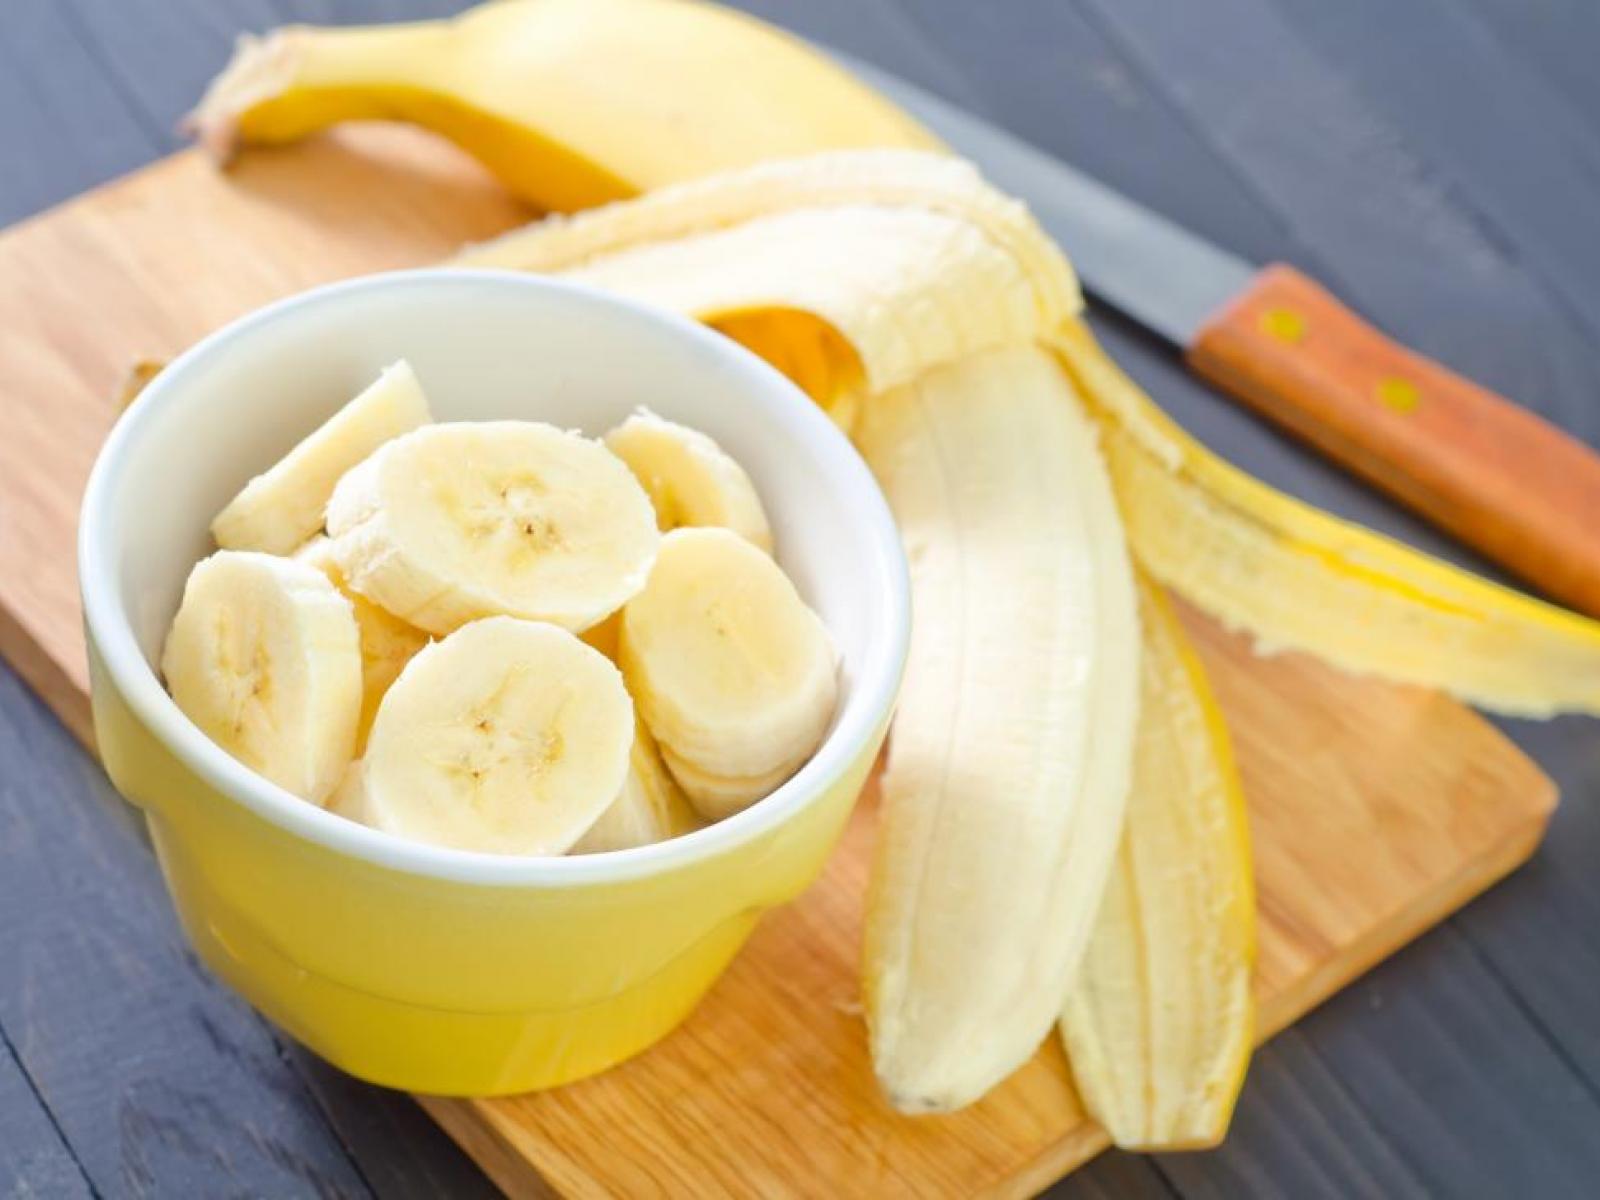  6 أطعمة تساعدك على النوم بسرعة  Bananas-chopped-up-in-a-bowl_0